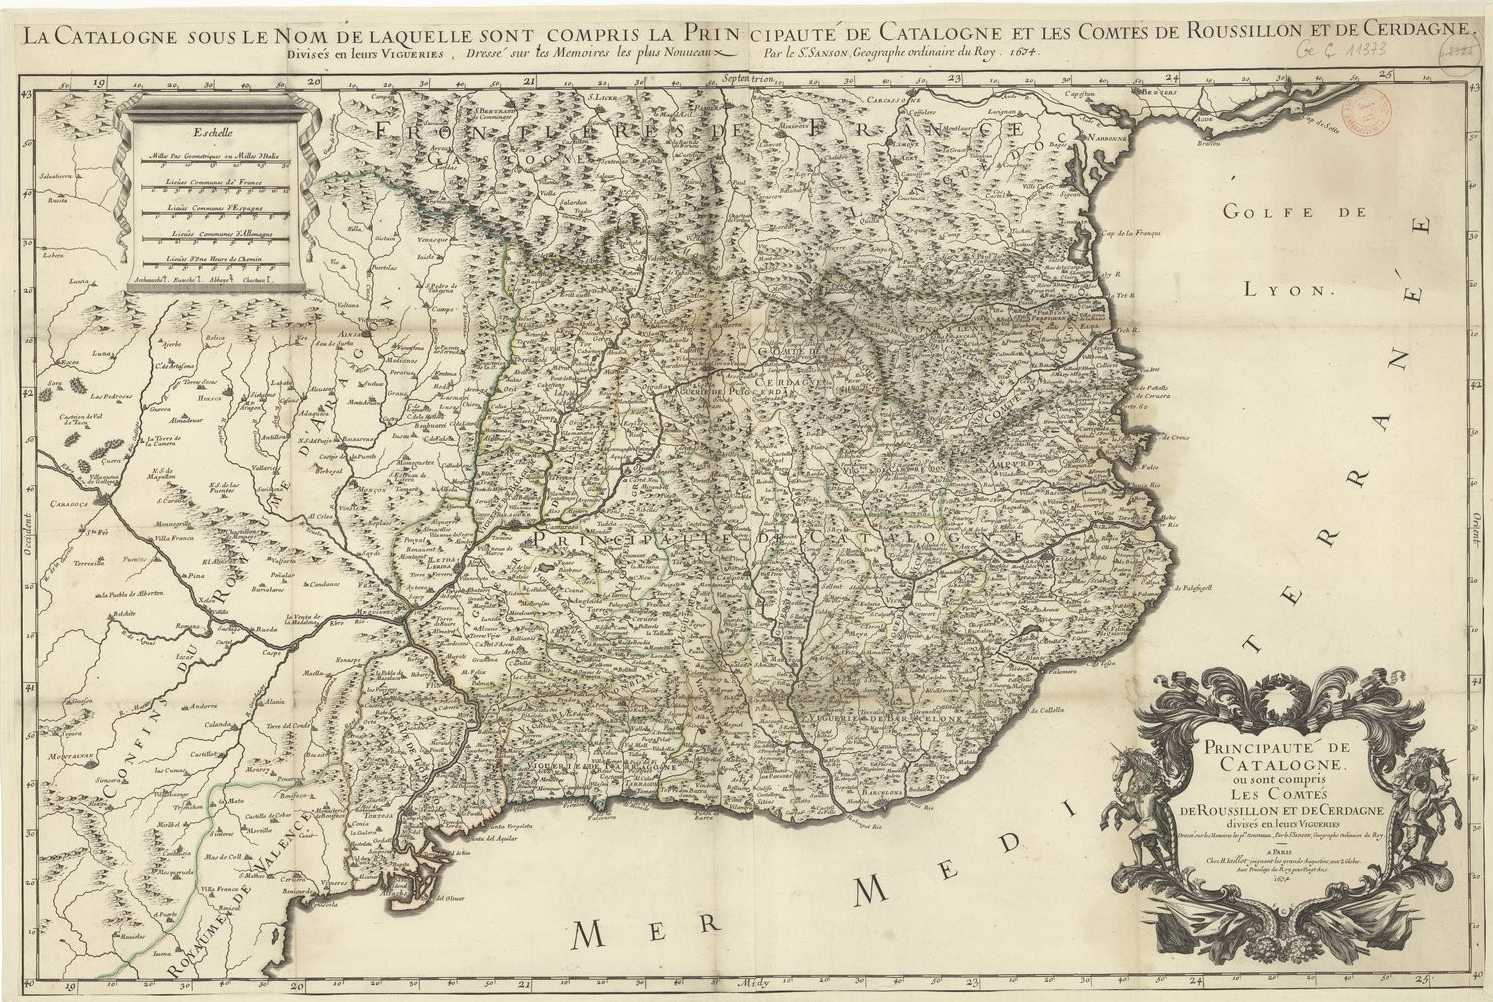 Dalmases y Ferran, los embajadores catalanes en la Europa de 1714